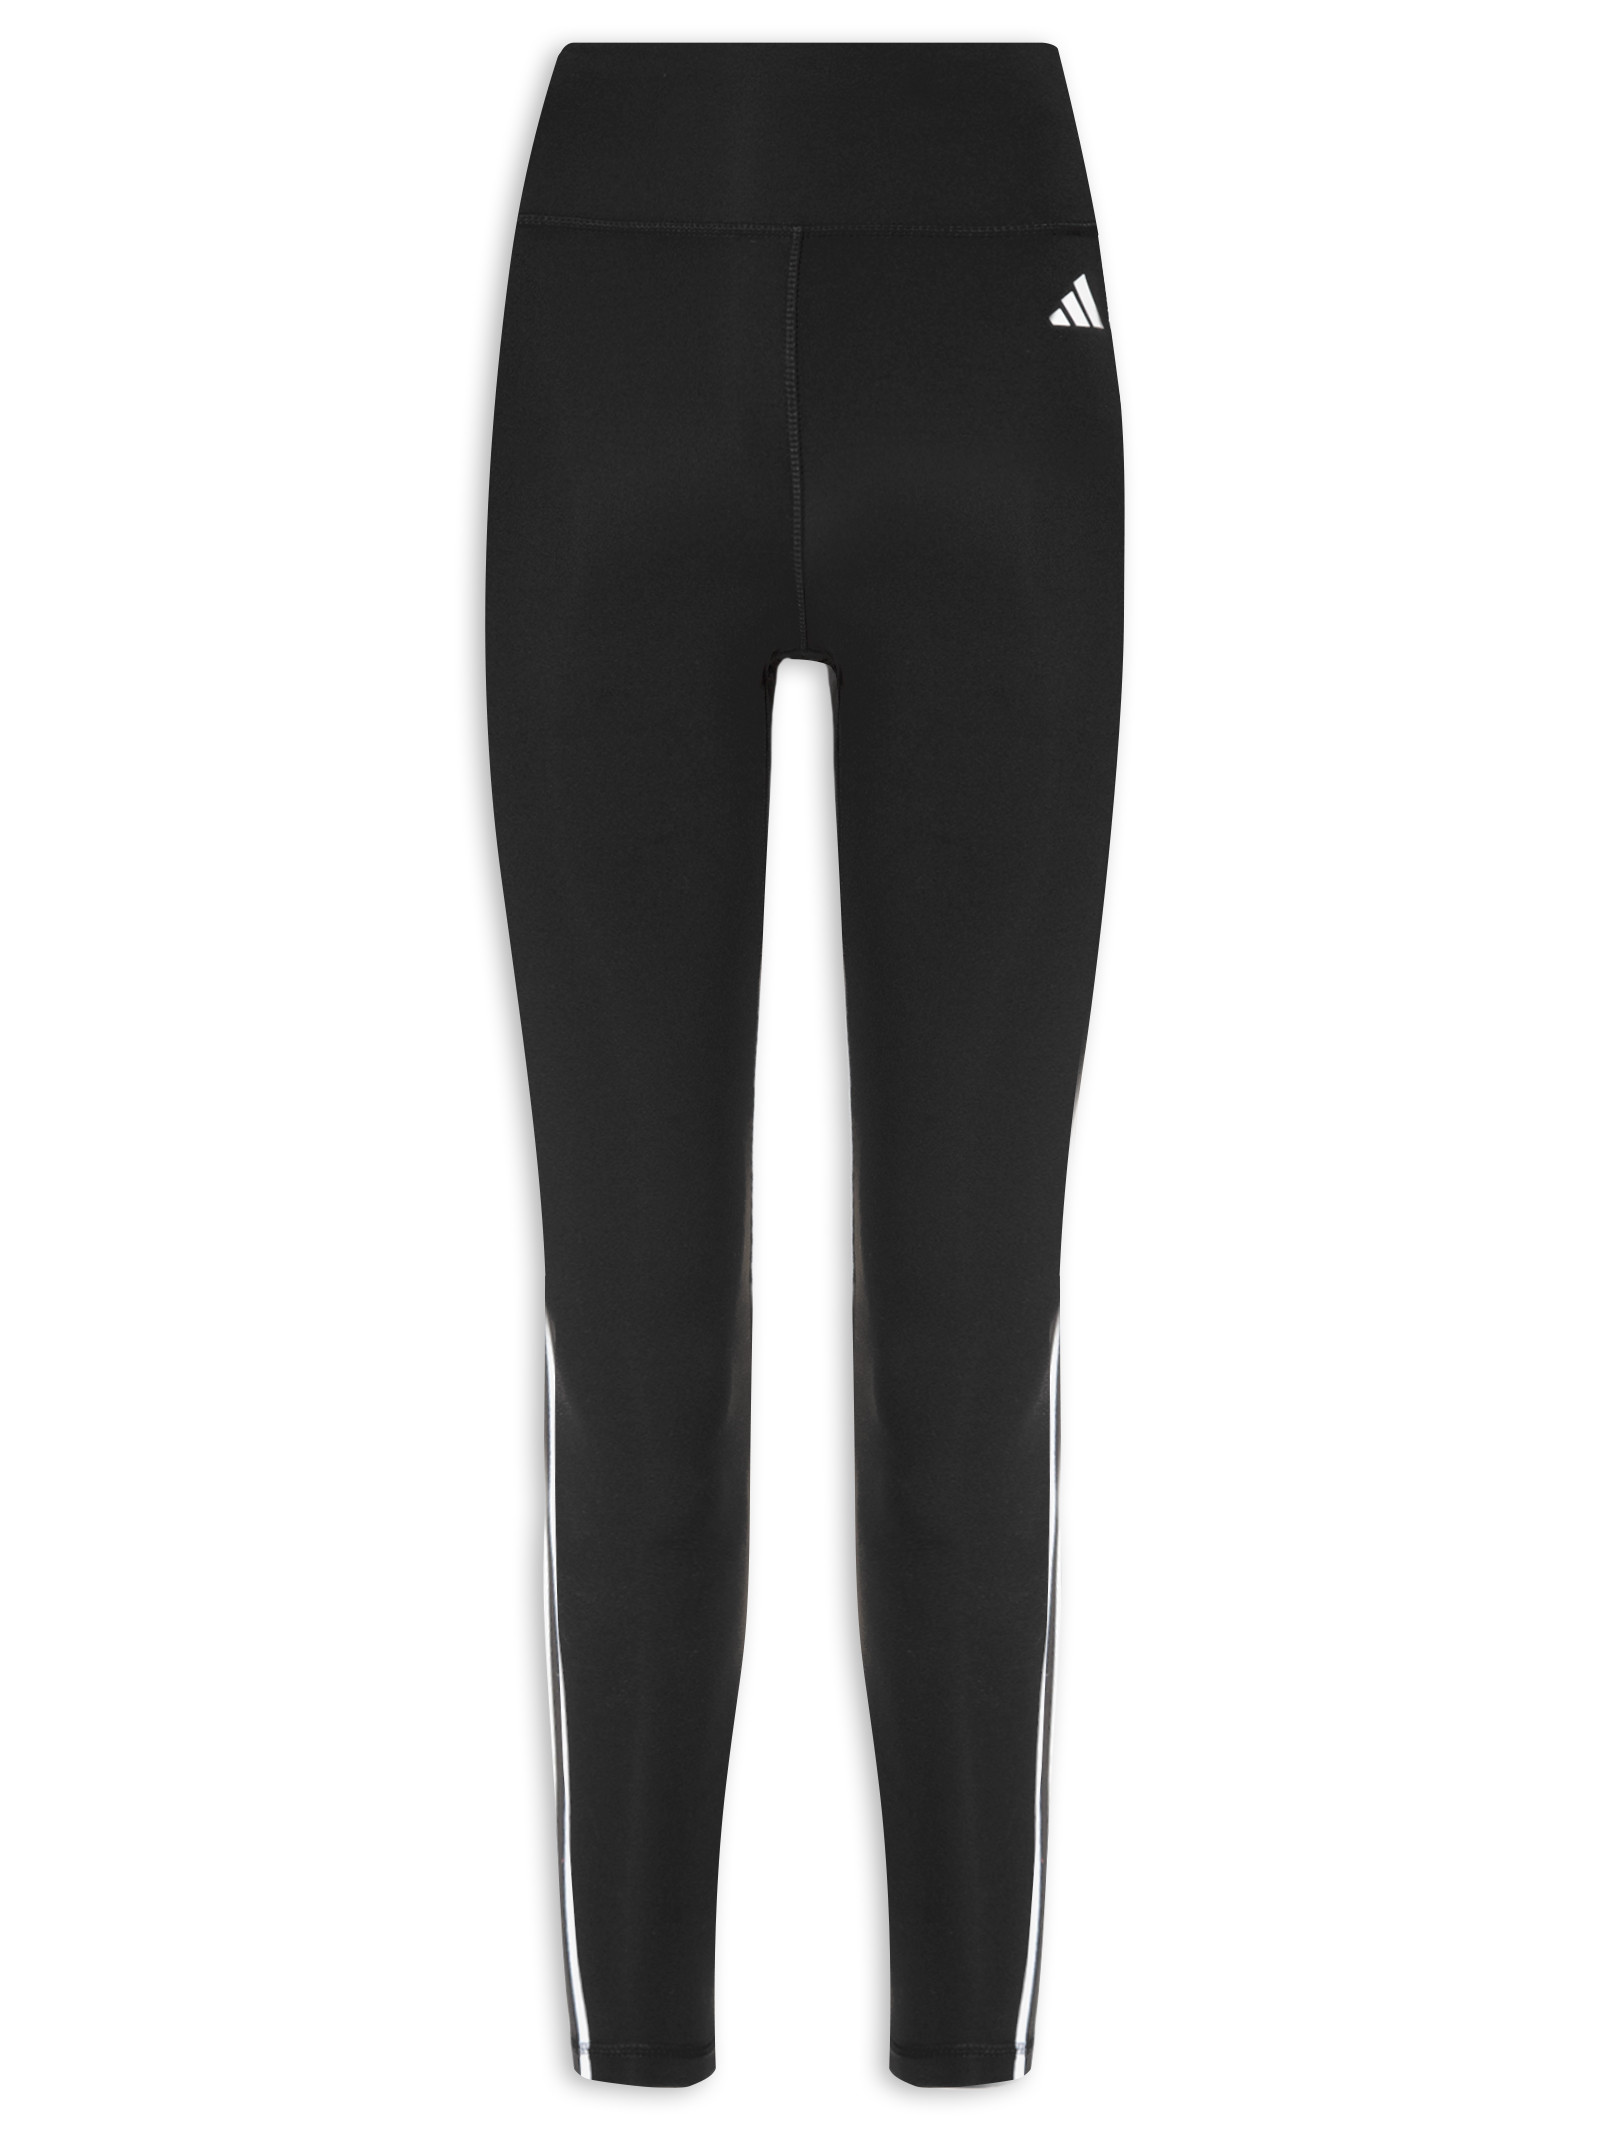 adidas Originals Adidas Training 3 Stripe leggings in Black